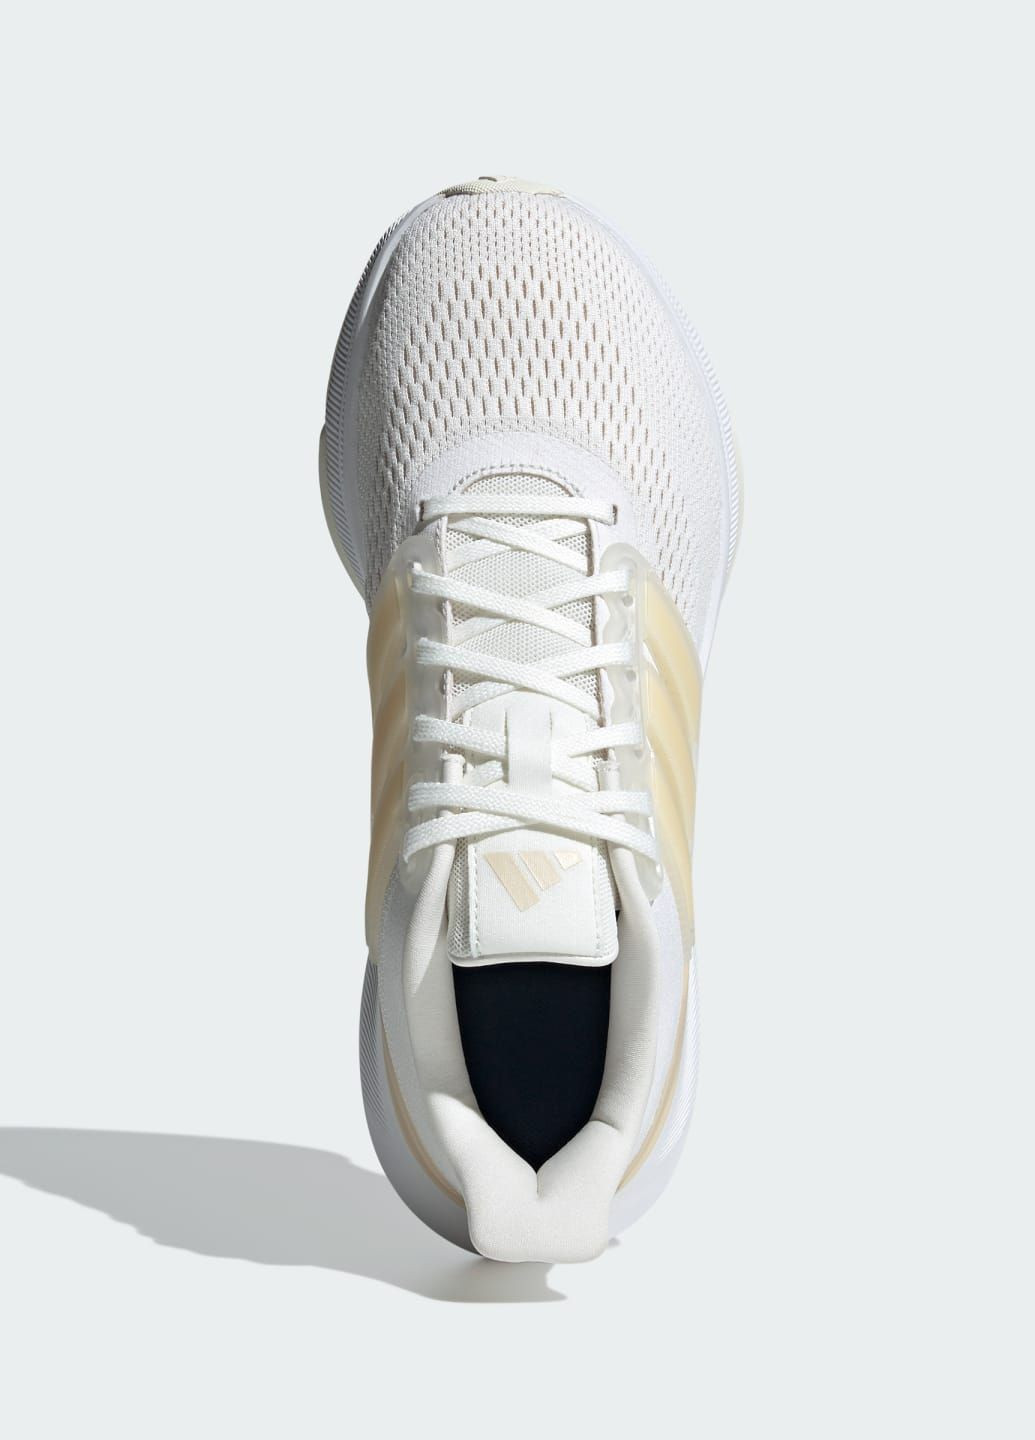 Белые всесезонные кроссовки ultrabounce adidas